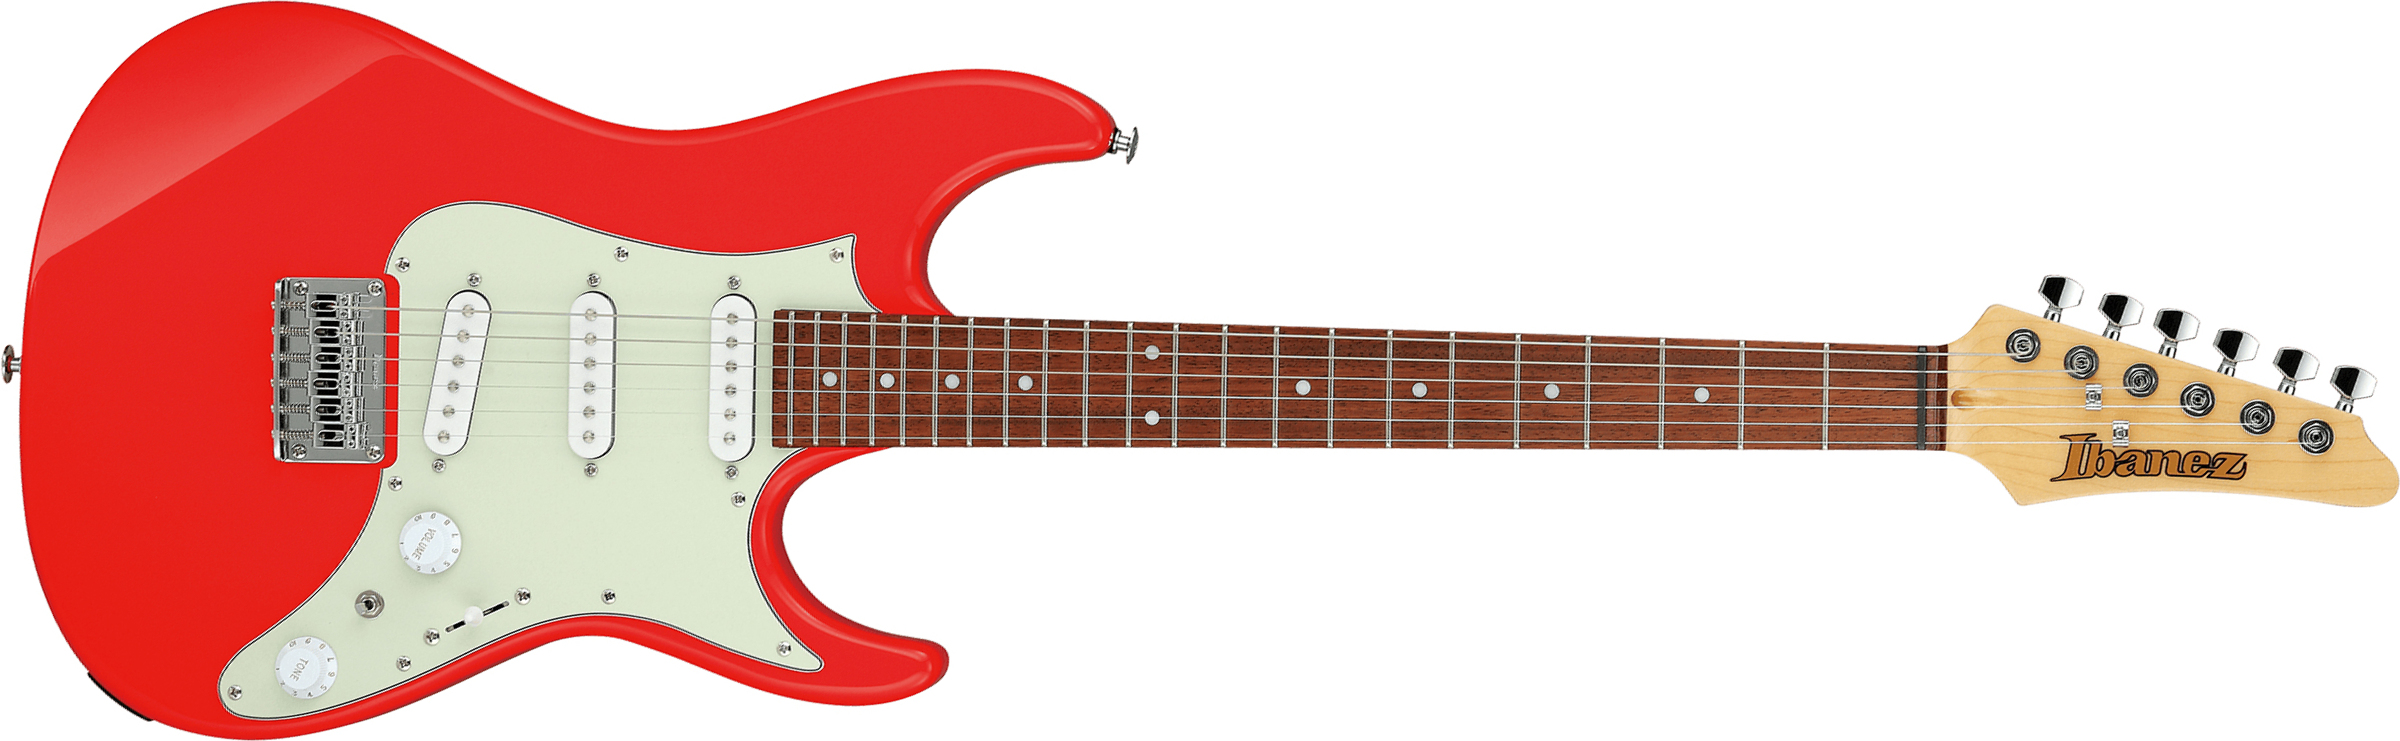 Ibanez Azes31 Vm Standard 3s Trem Jat - Vermillion - Guitarra eléctrica con forma de str. - Main picture